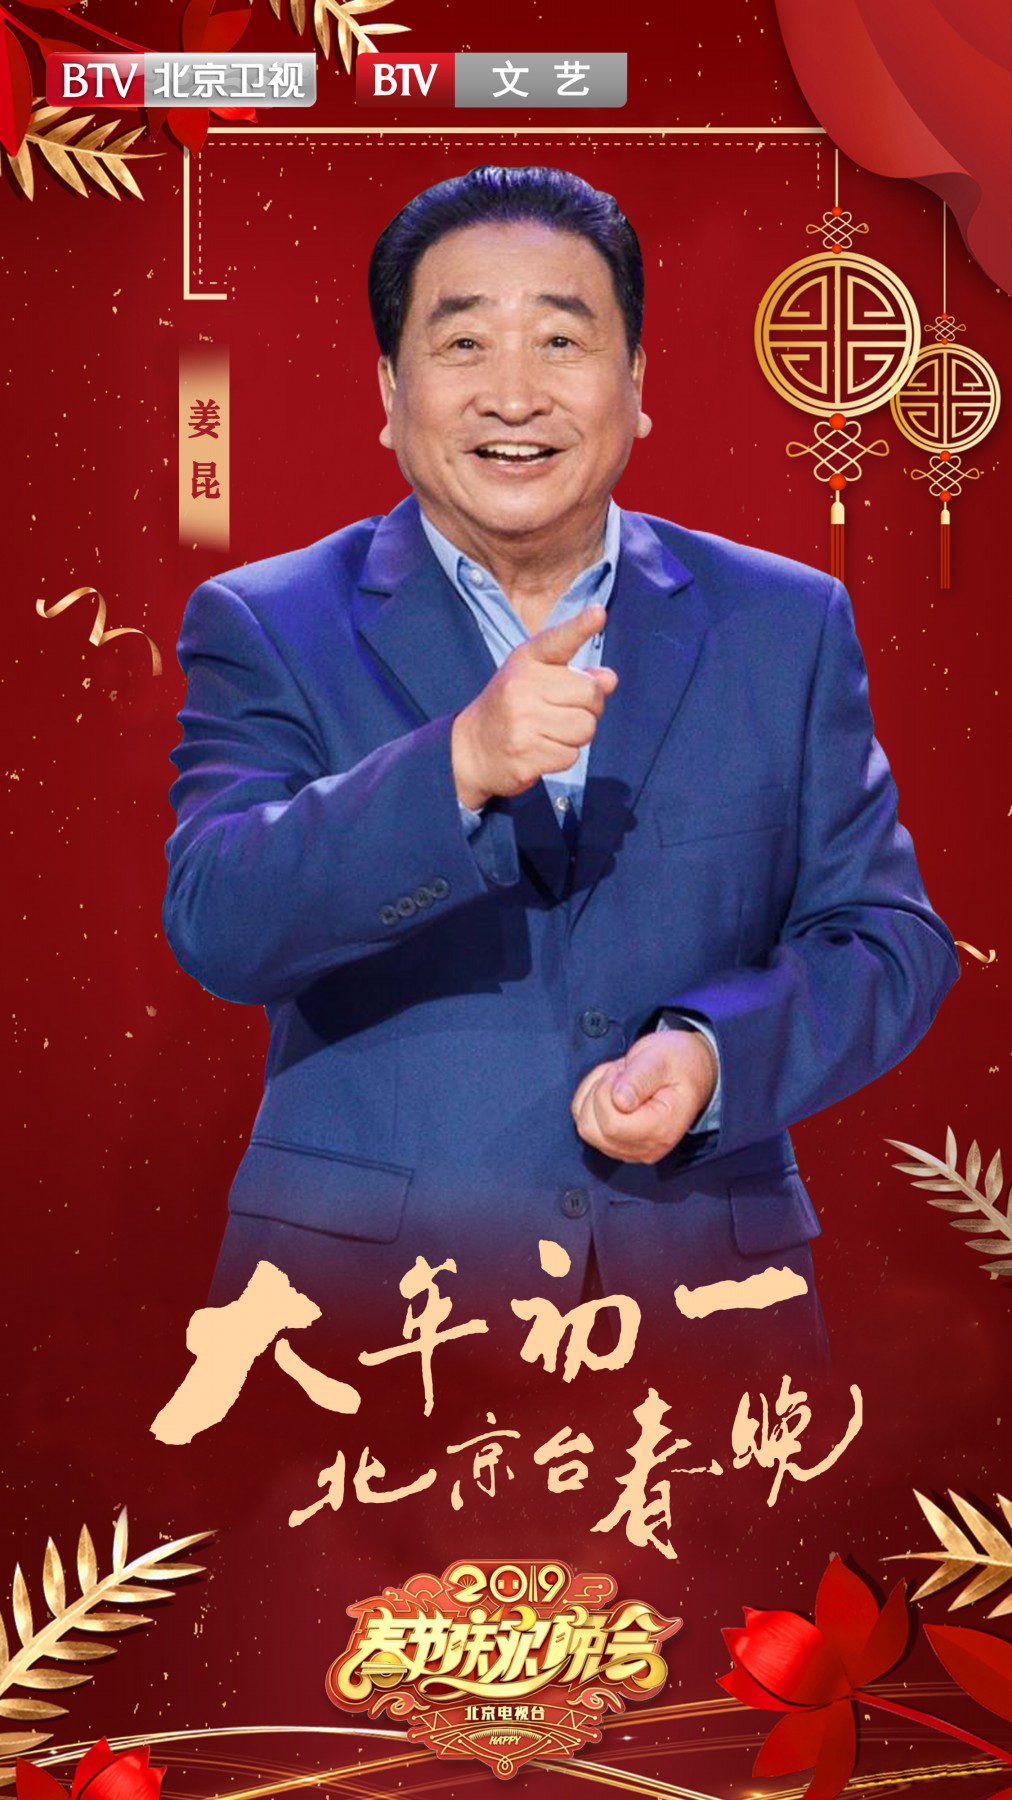 2019年北京廣播電視台春節聯歡晚會